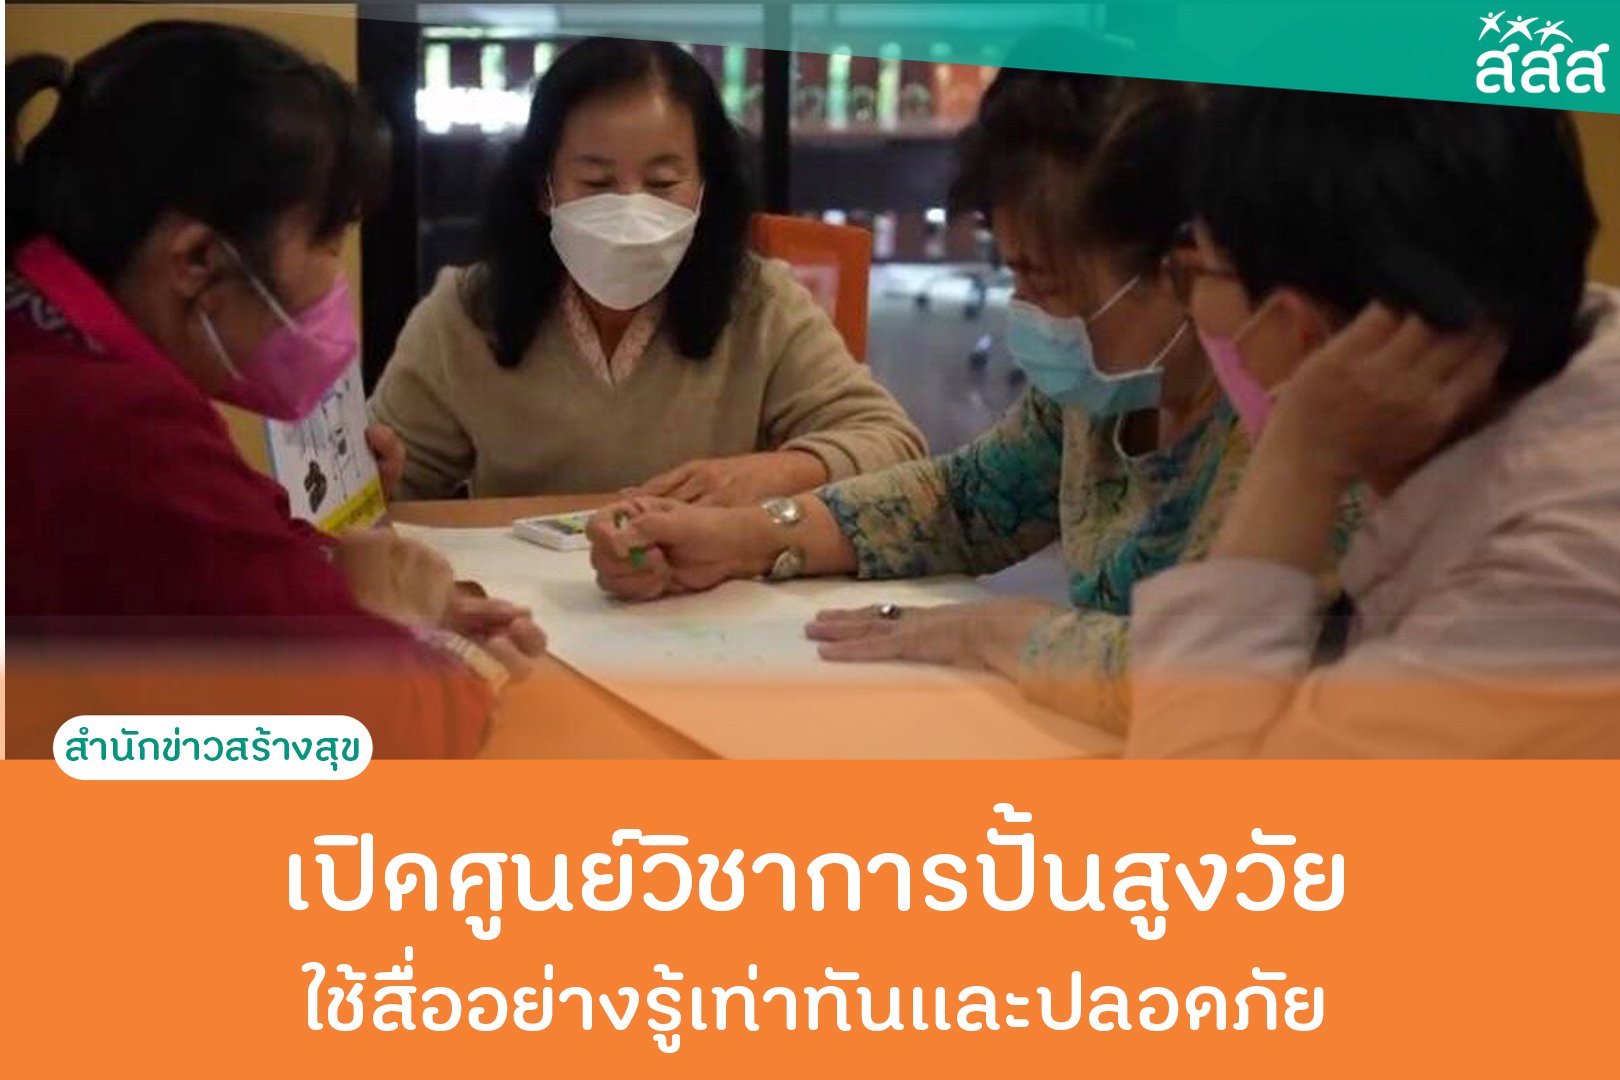 เปิดศูนย์วิชาการปั้นสูงวัย ใช้สื่ออย่างรู้เท่าทันและปลอดภัย thaihealth